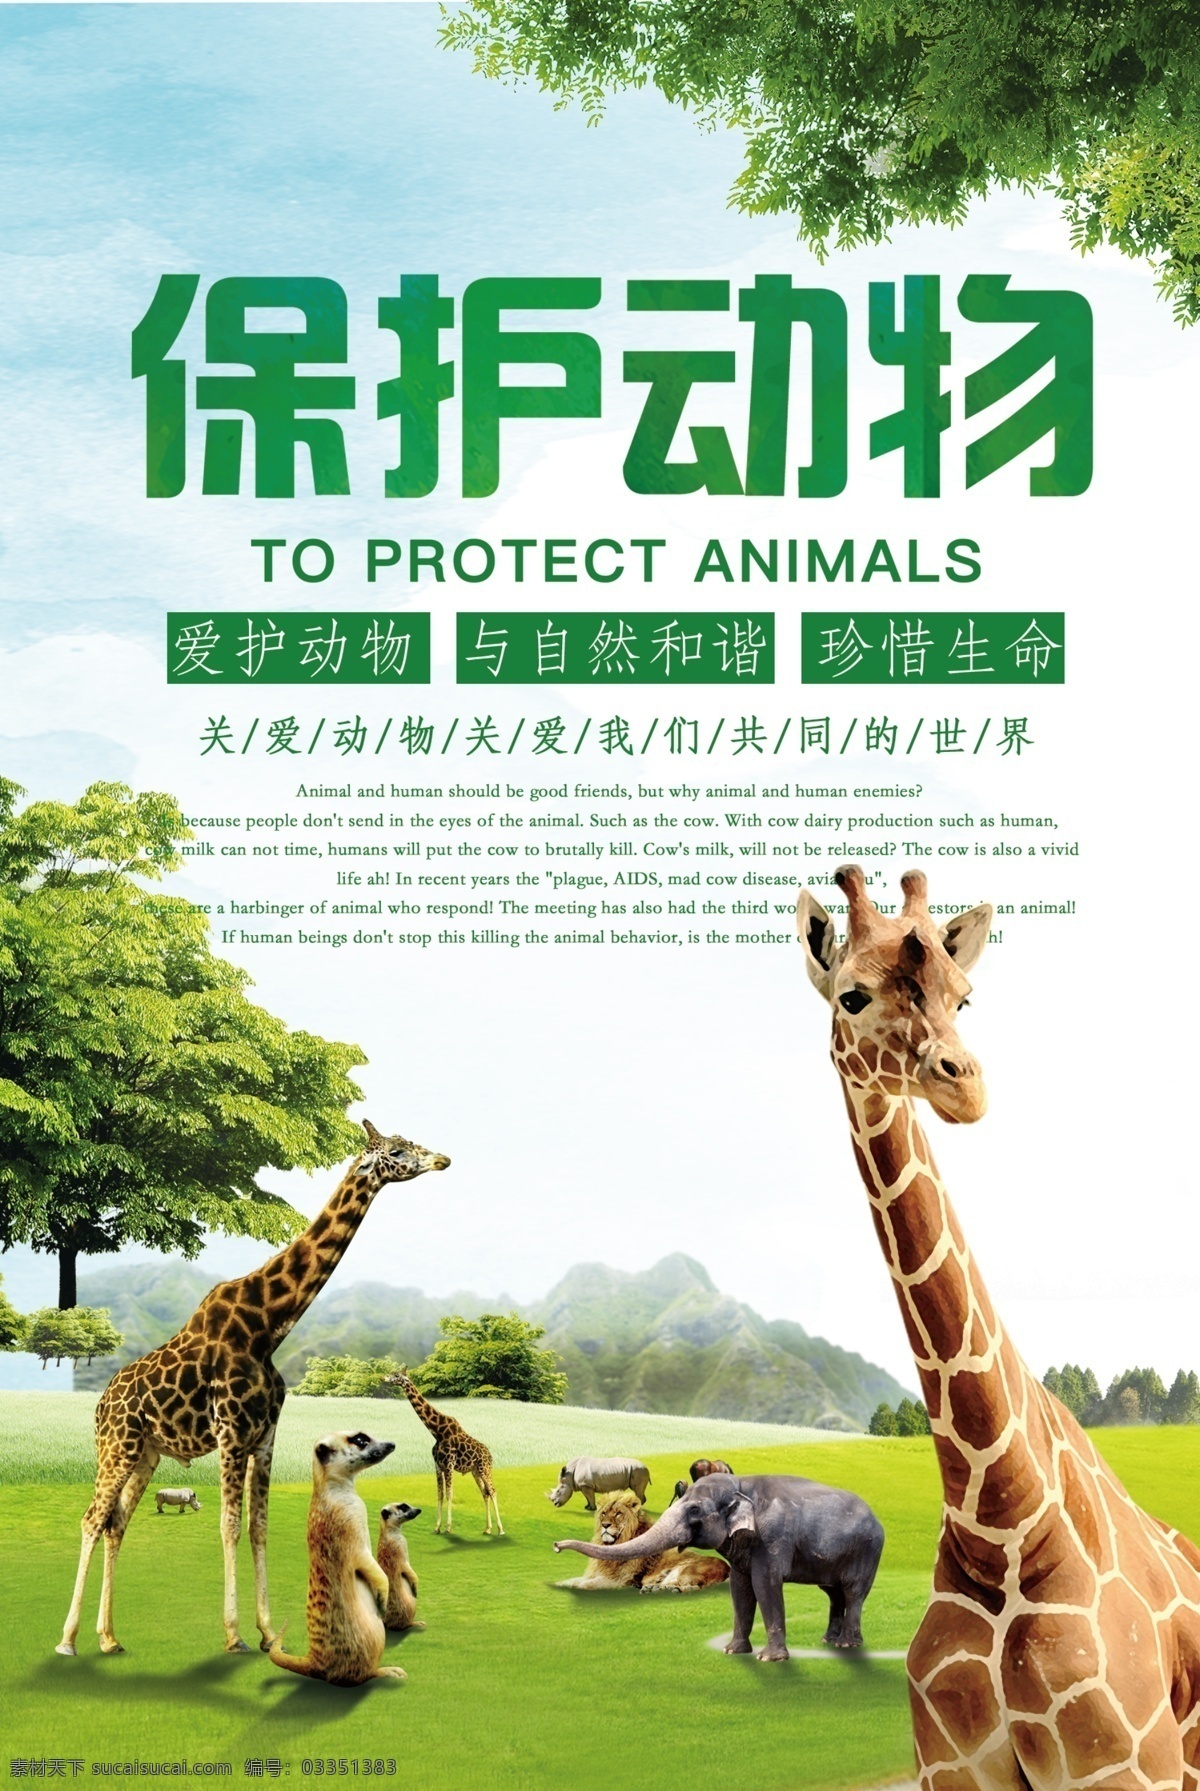 绿色 大气 保护 野生动物 公益 海报 免费海报 动物世界 狮子 保护野生动物 野外丛林 动物动物协会 爱护动物 生态平衡 保护生物 自然保护区 关爱野生动物 保护动物宣传 野生动物展板